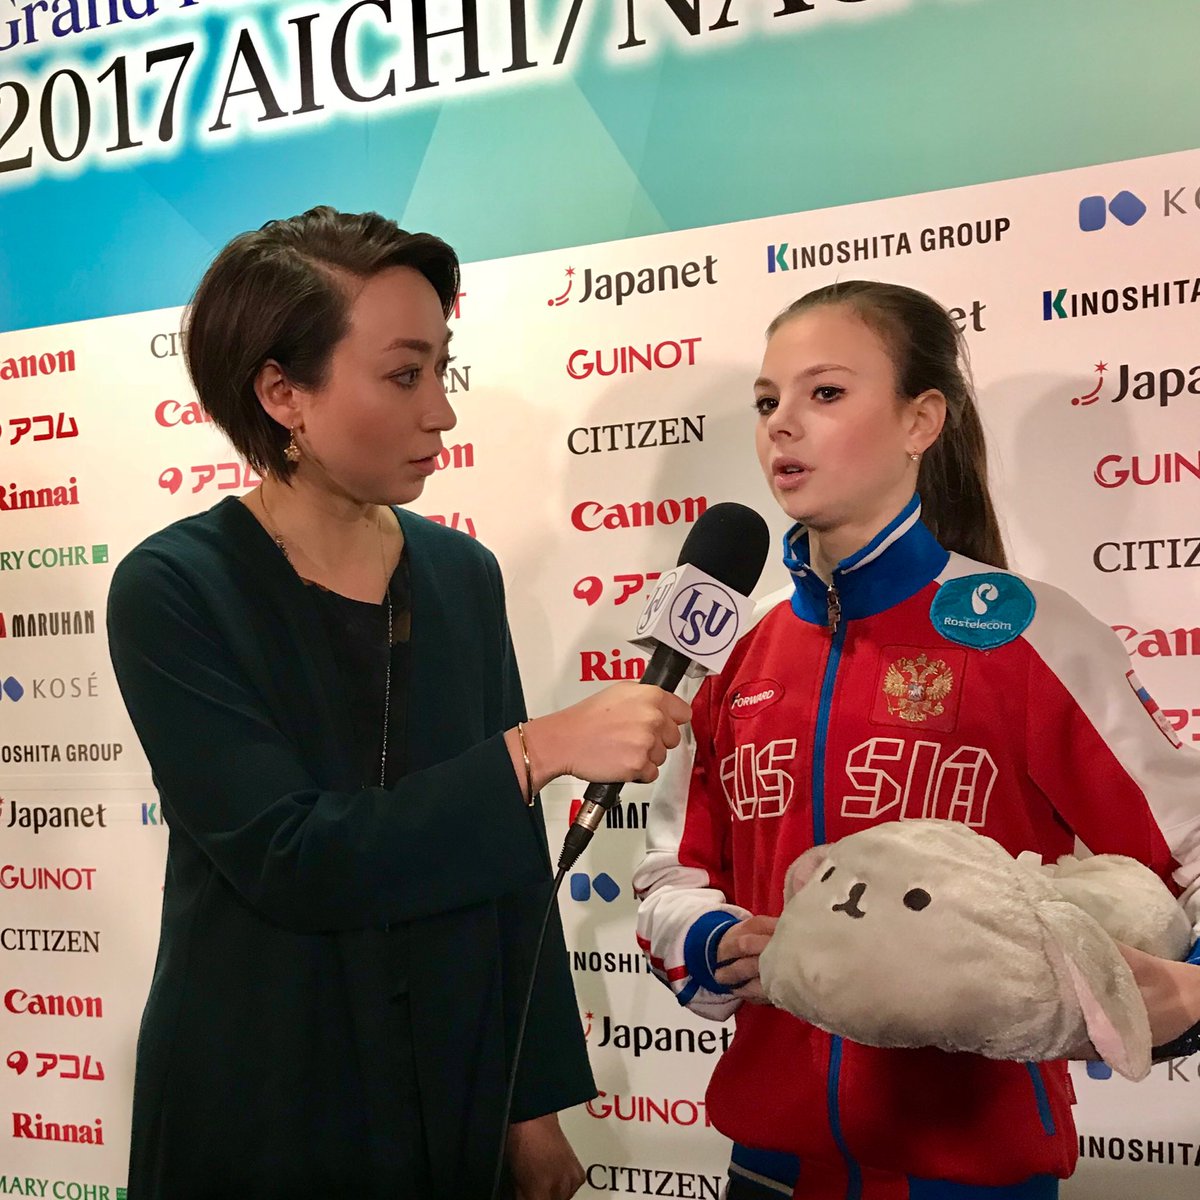 Junior - Final Grand Prix 2017/2018, 7 - 10 Dec 2017, Nagoya Japan  - Страница 14 DQlemhxU8AEqzAl